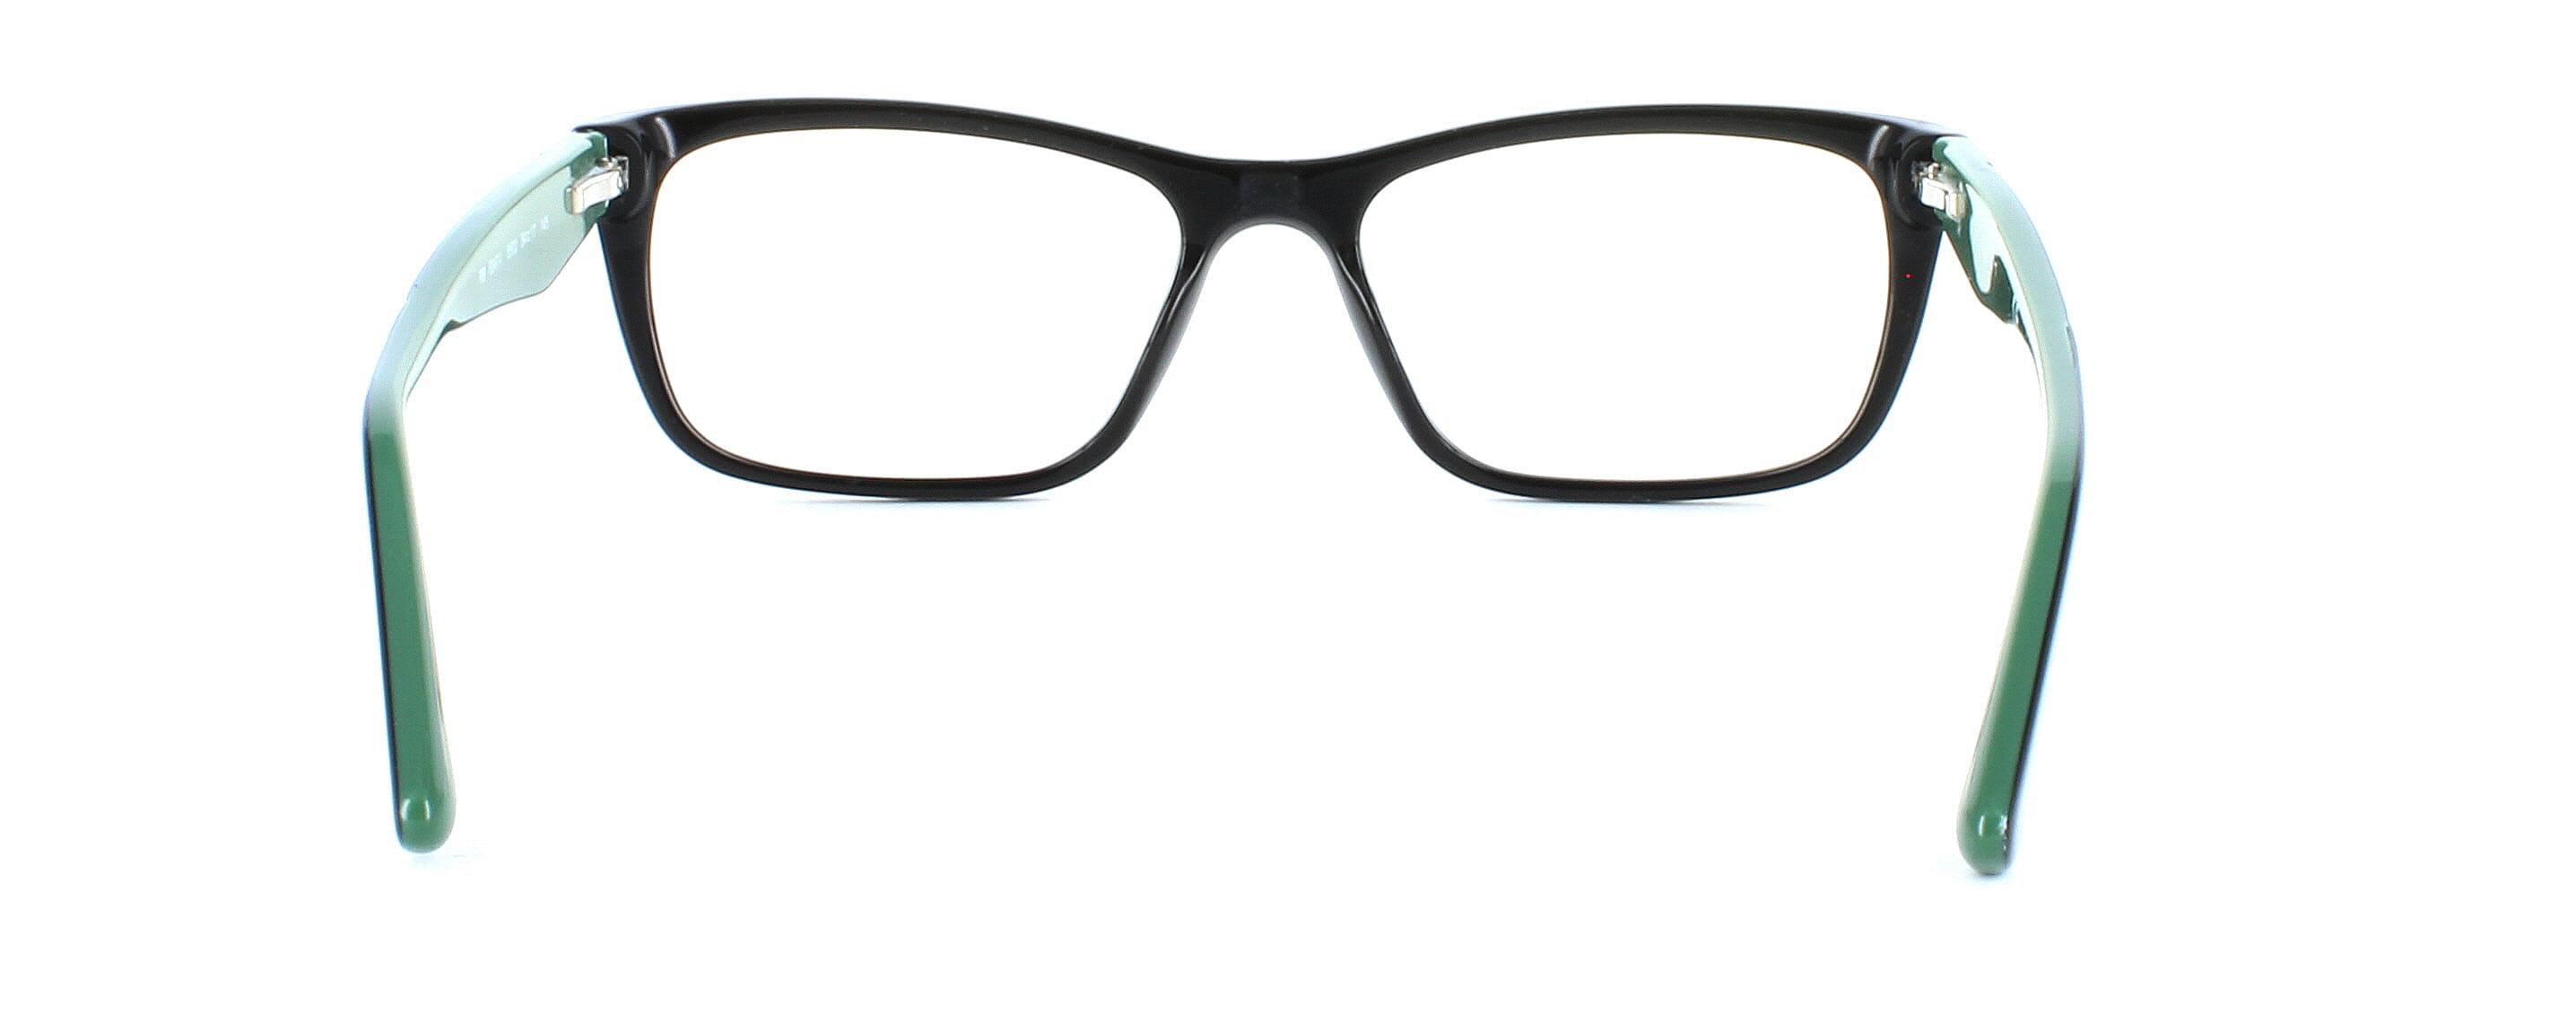 Ray Ban 5347 5502 - Unisex acetate glasses - shiny black - image 3